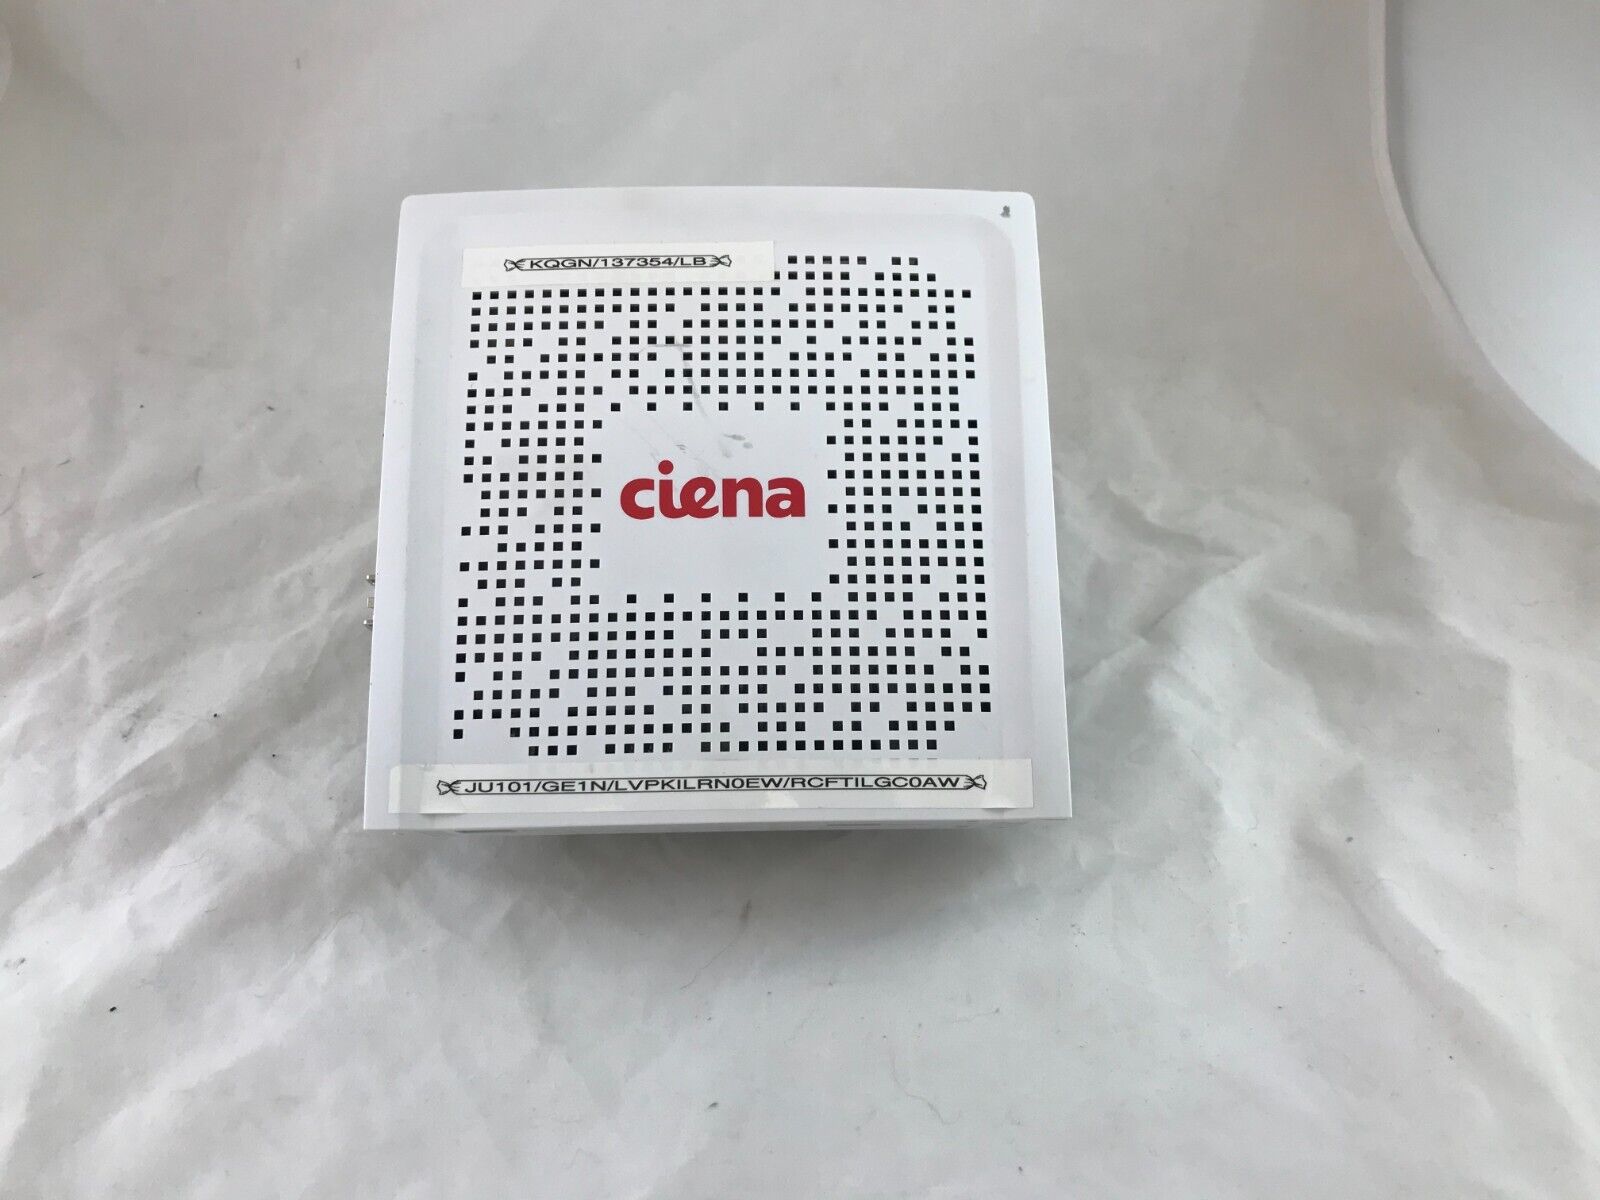 Ciena 3903x Demarcation Switch 170-3903-910 with Power Supply & bracket